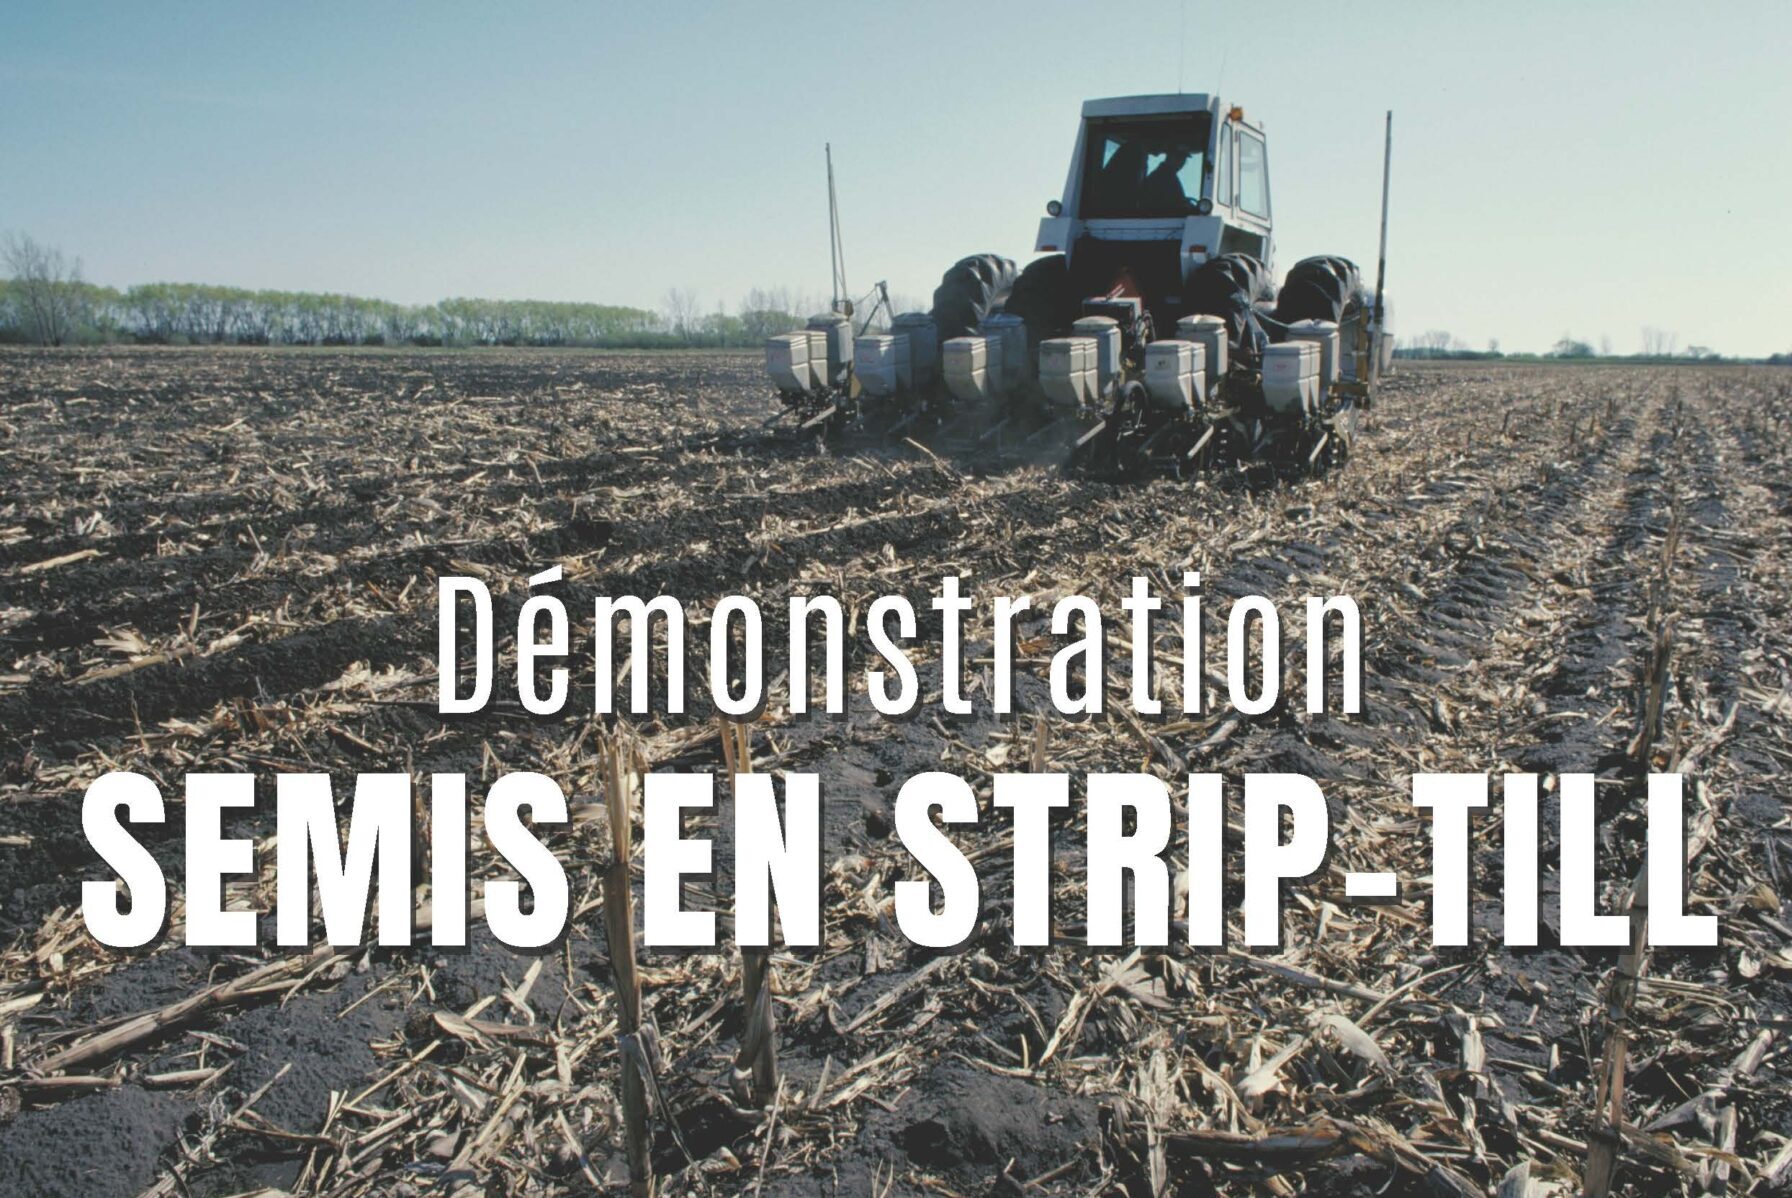 Démonstration de strip-till sur semis de maïs - Bassin versant de la Haute Ernée